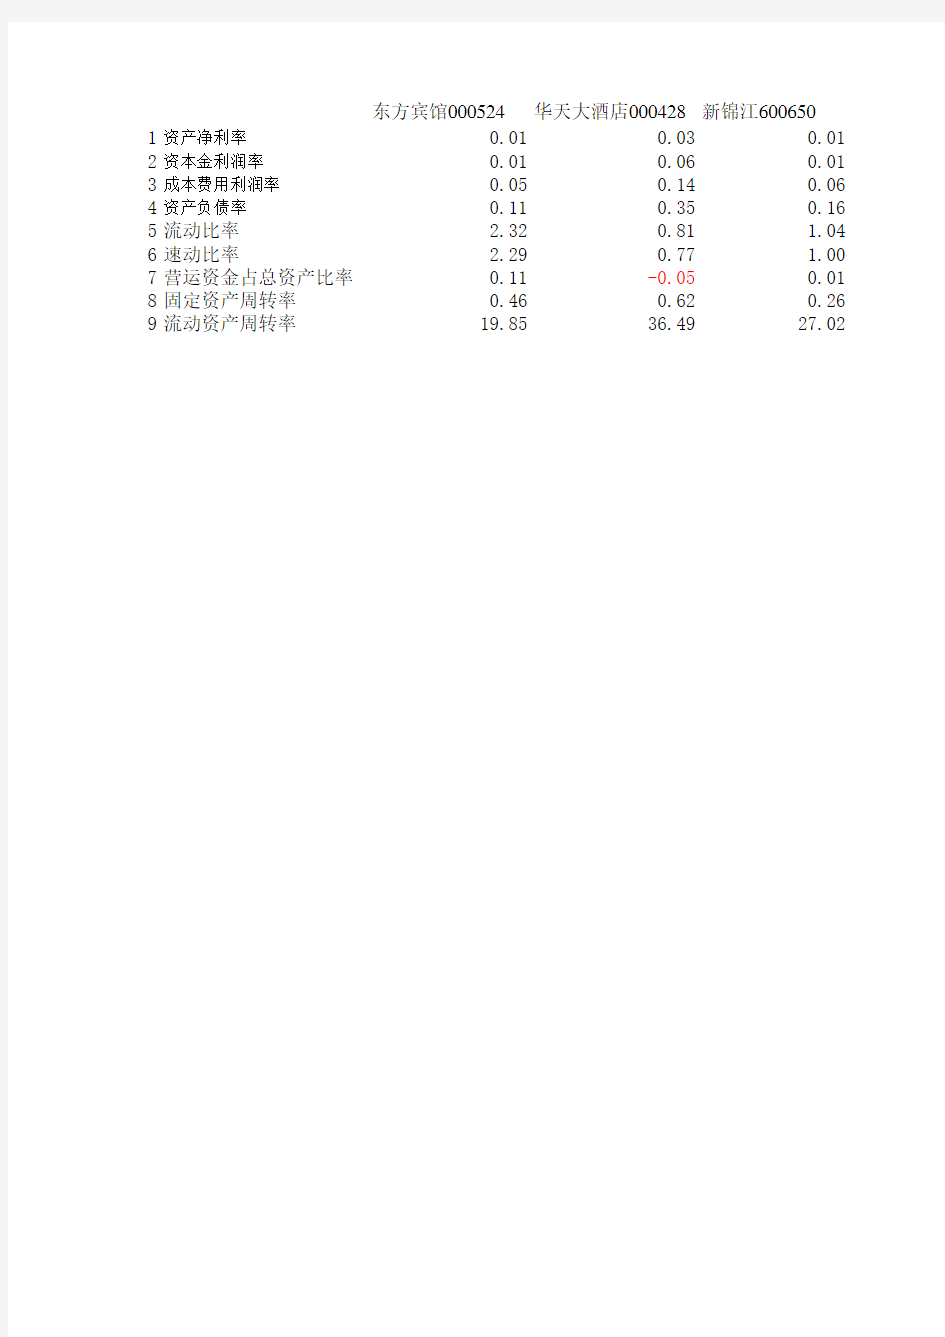 酒店财务数据指标分析0-2002